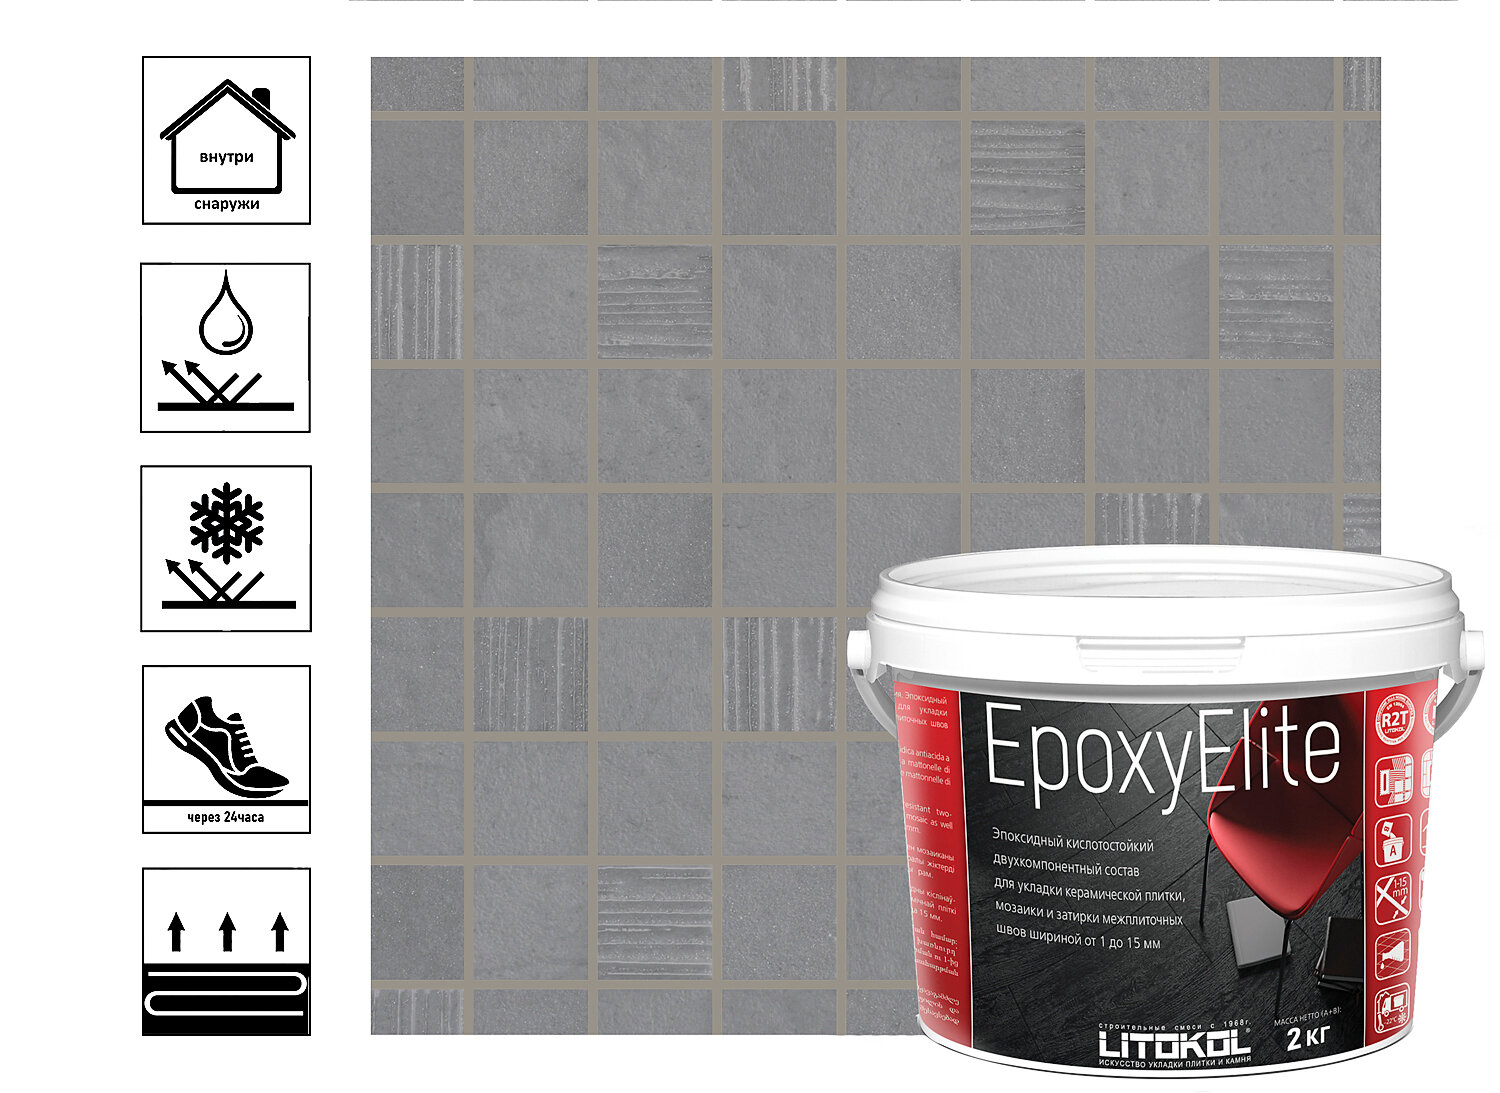 Затирка эпоксидная EpoxyElite для укладки и затирки мозаики и керамической плитки 2 кг серый базальт